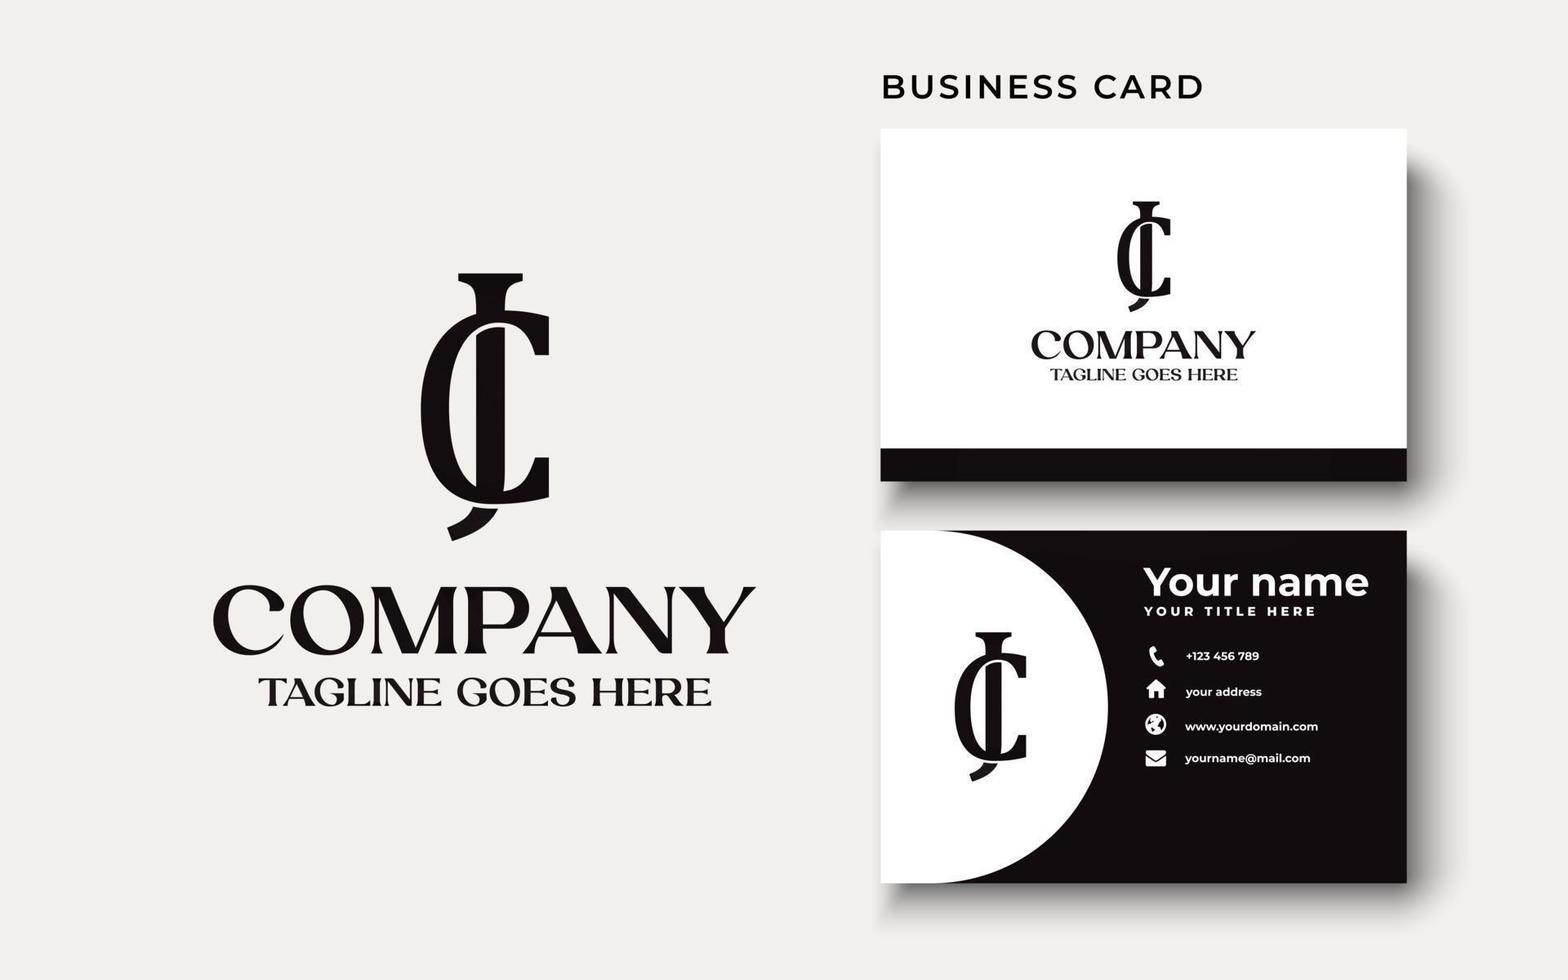 Anfangsbuchstabe jc, cj, j, c Großbuchstaben moderne Logo-Design-Vorlagenelemente. schwarzer Buchstabe auf weißem Hintergrund. kann für Unternehmen, Consulting-Gruppenunternehmen verwendet werden. vektor